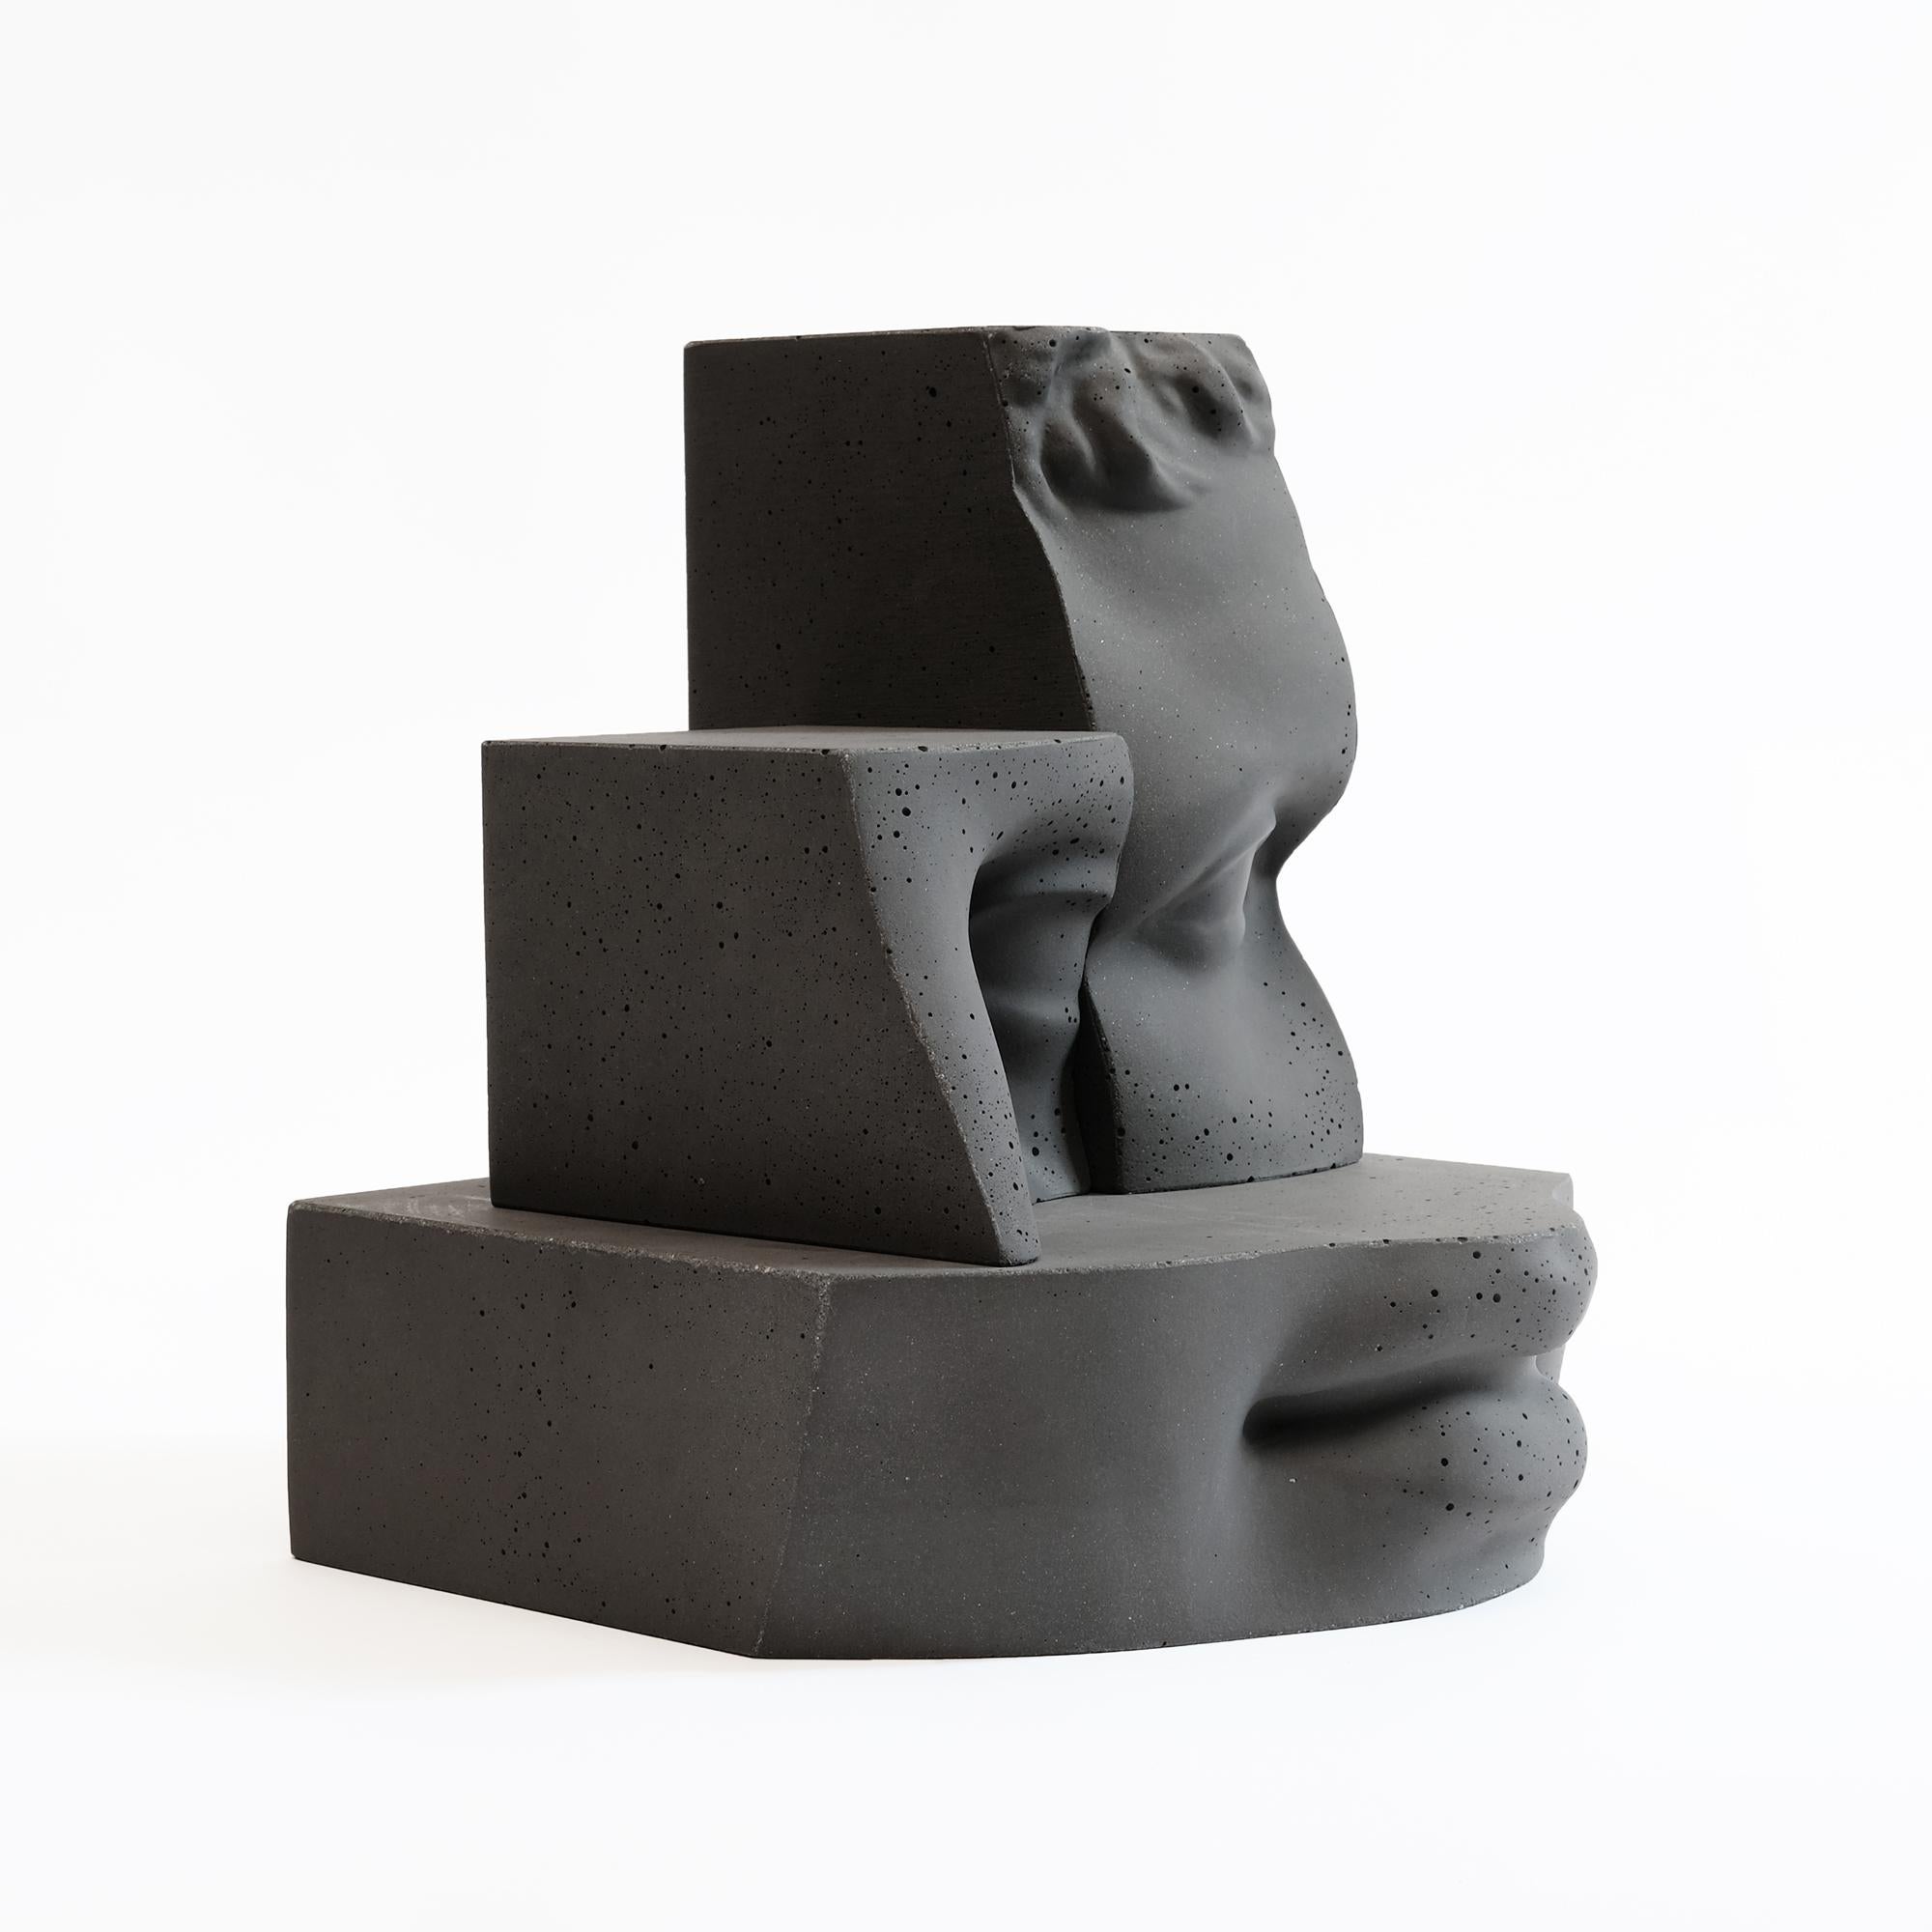 Cement Contemporary Paolo Giordano Hermes sculpture abstraite béton ciment coulé gris

Hermès est une sculpture en béton. Elle fait partie d'une grande œuvre également photographique : Digital Journey into the Classic